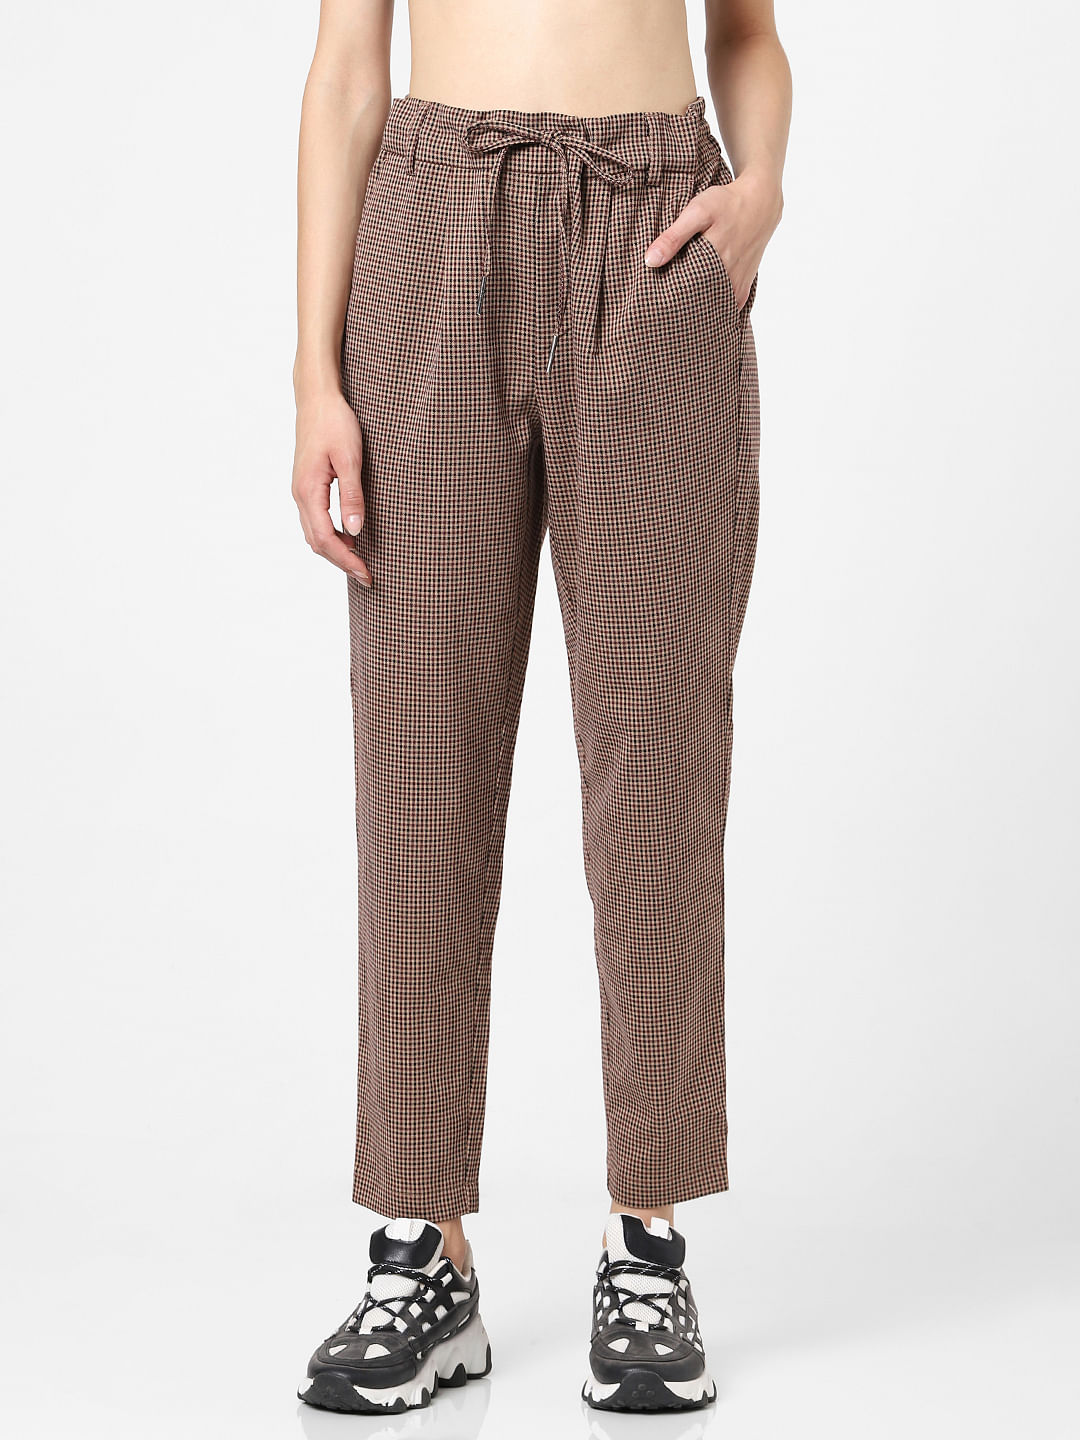 Kotty Regular Fit Women Cotton Lycra Blend Brown Trousers